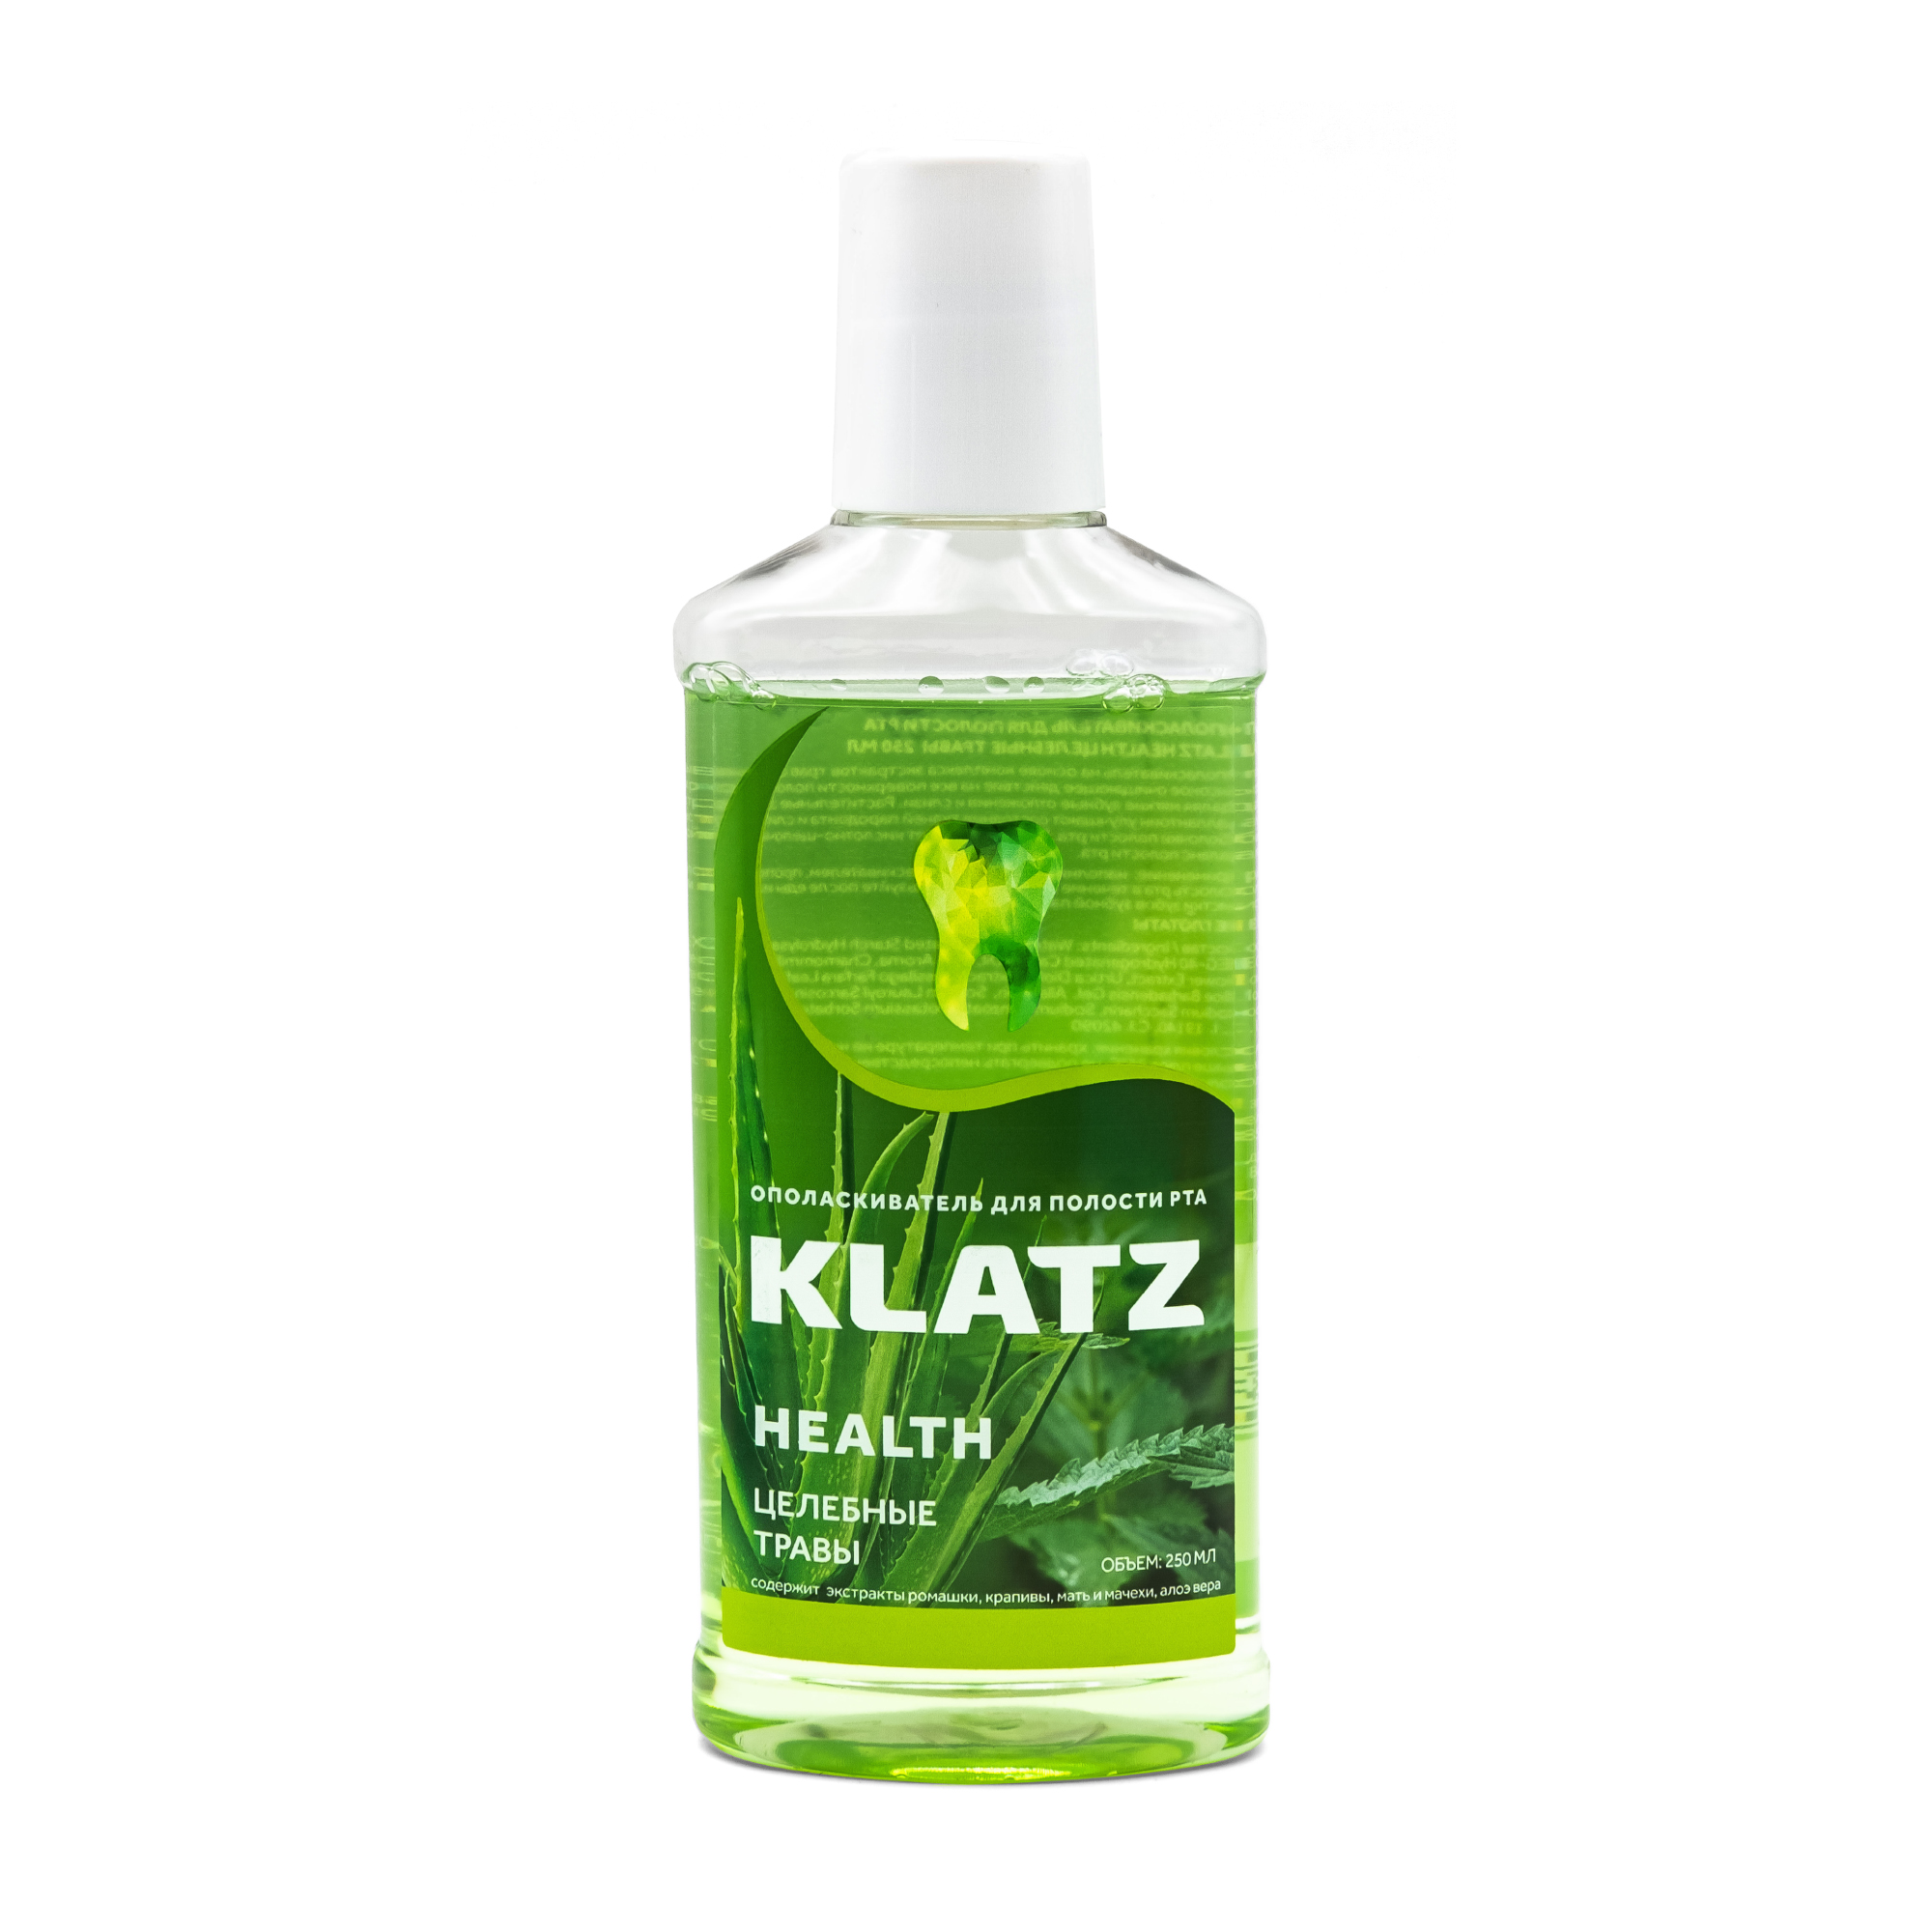 Купить Ополаскиватель для полости рта Klatz Health Целебные травы, 250 мл